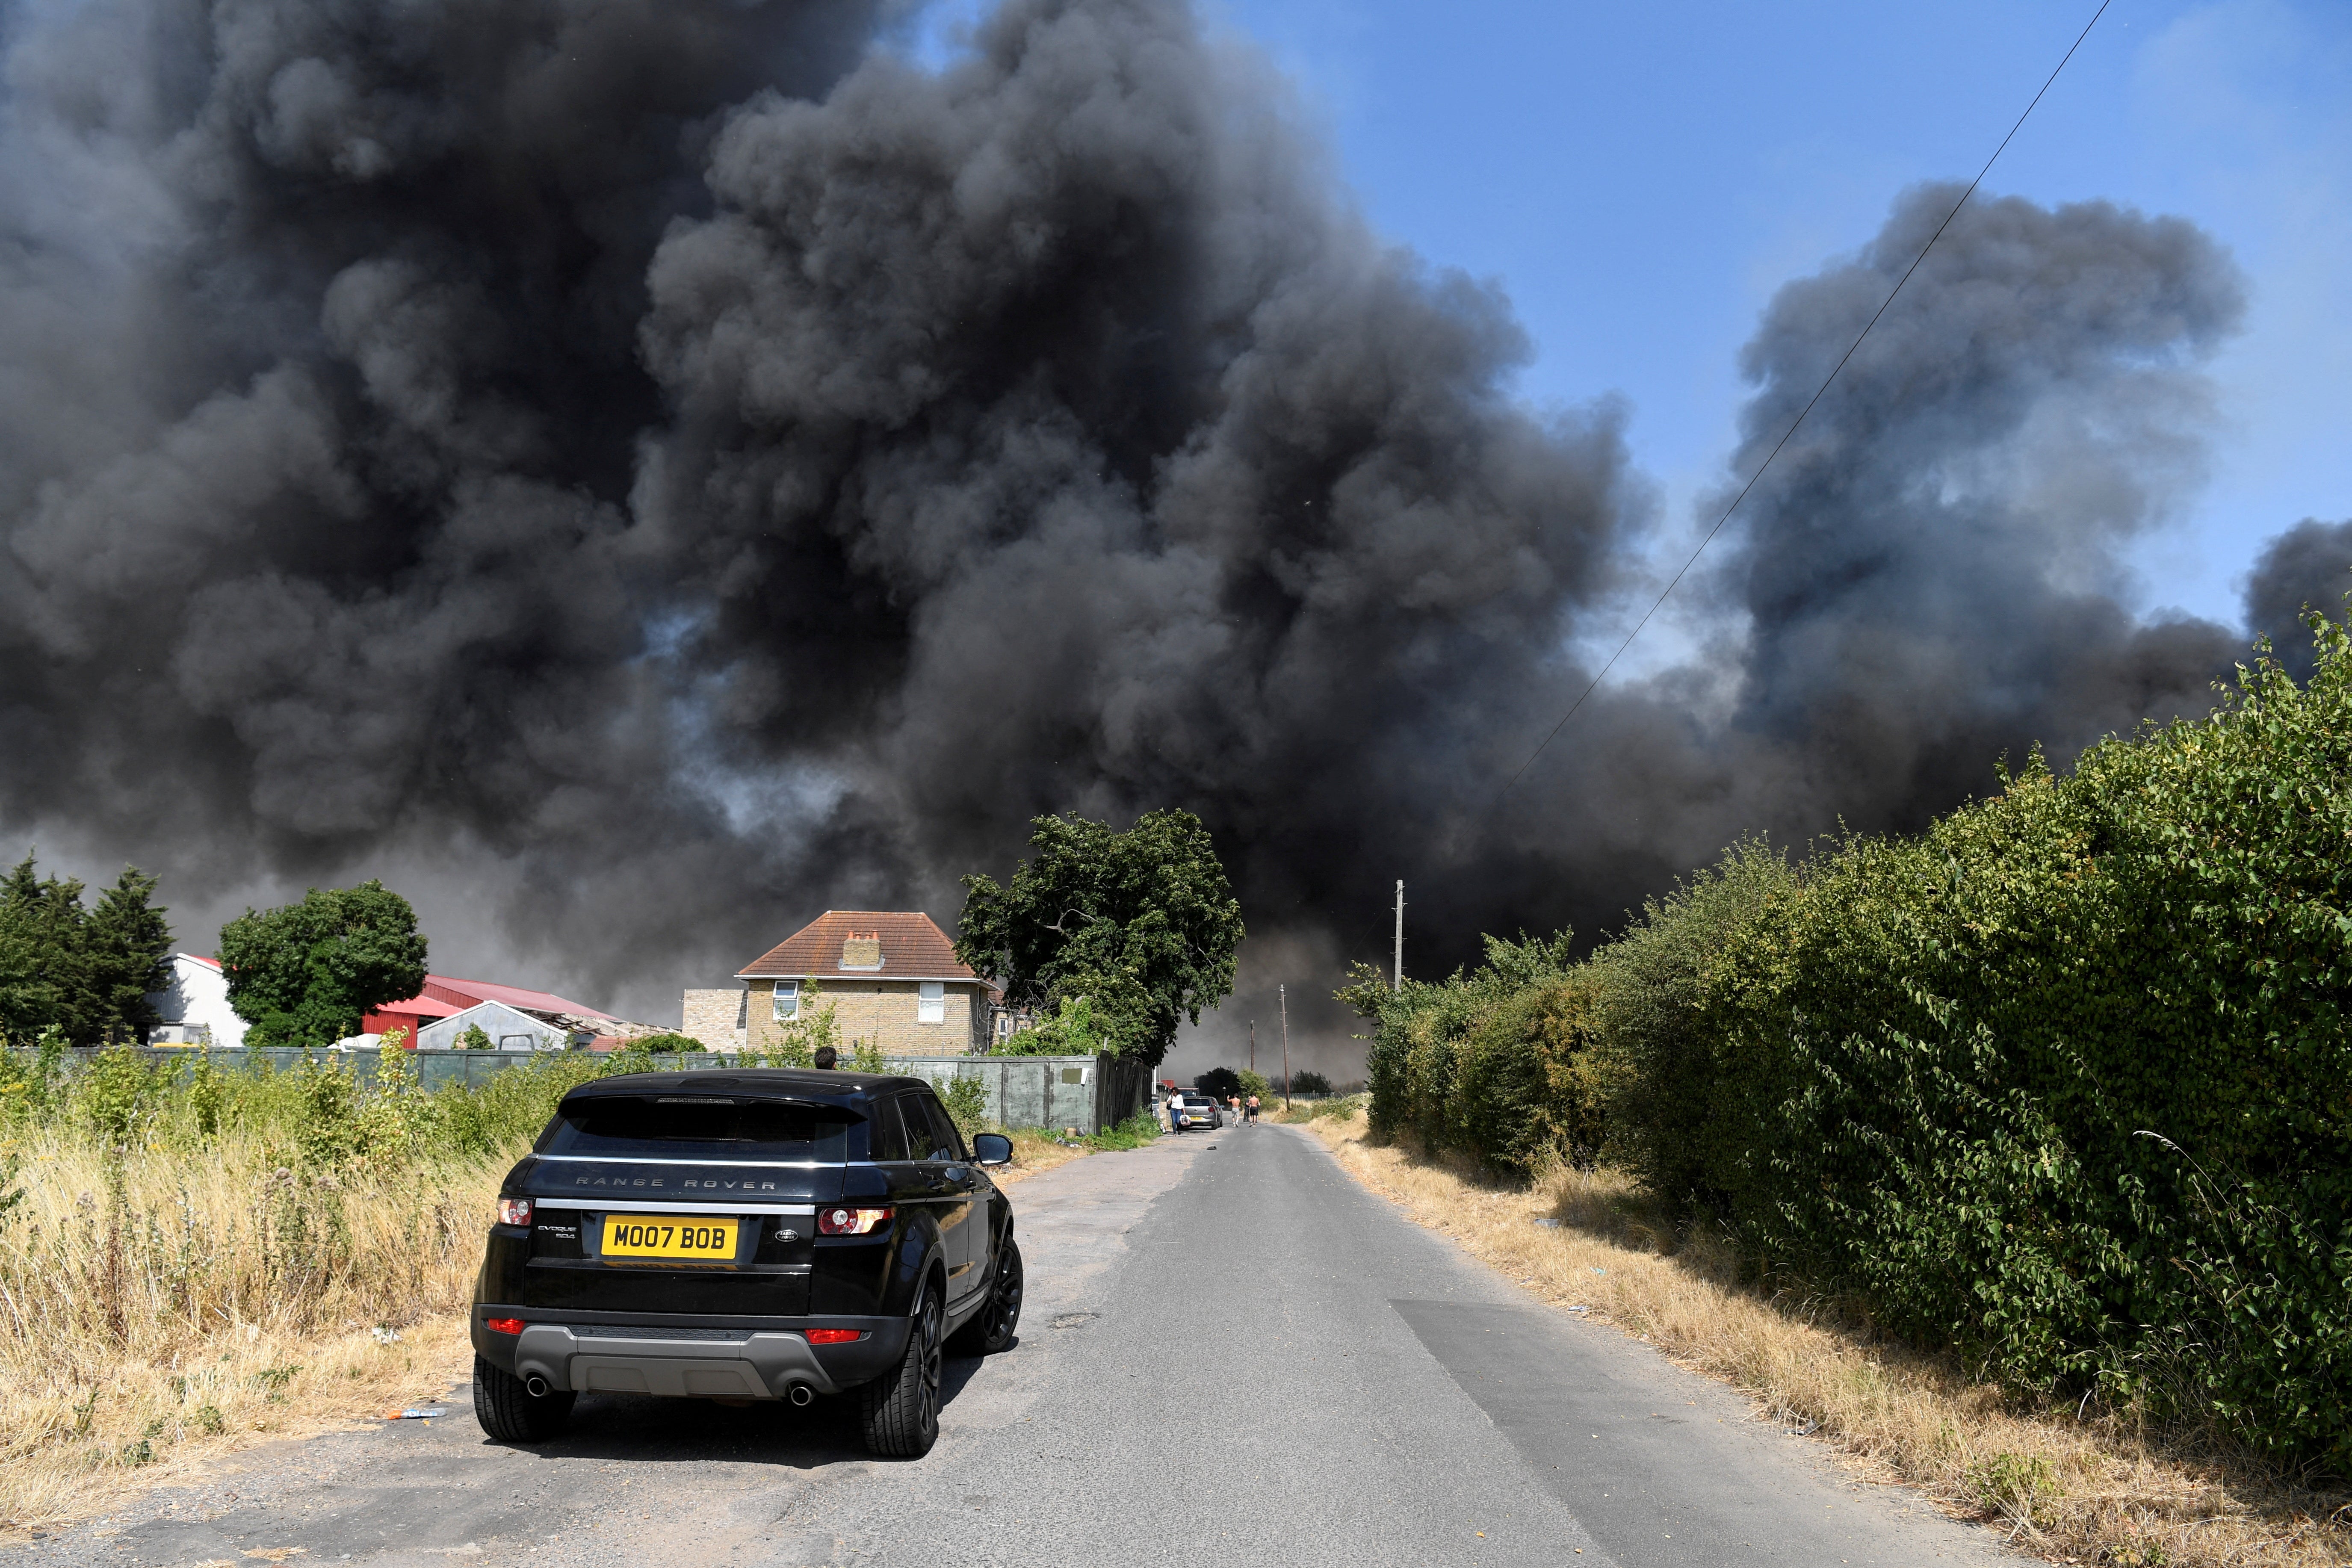 A car drives near a fire that burns during the heatwave, in Rainham, east London